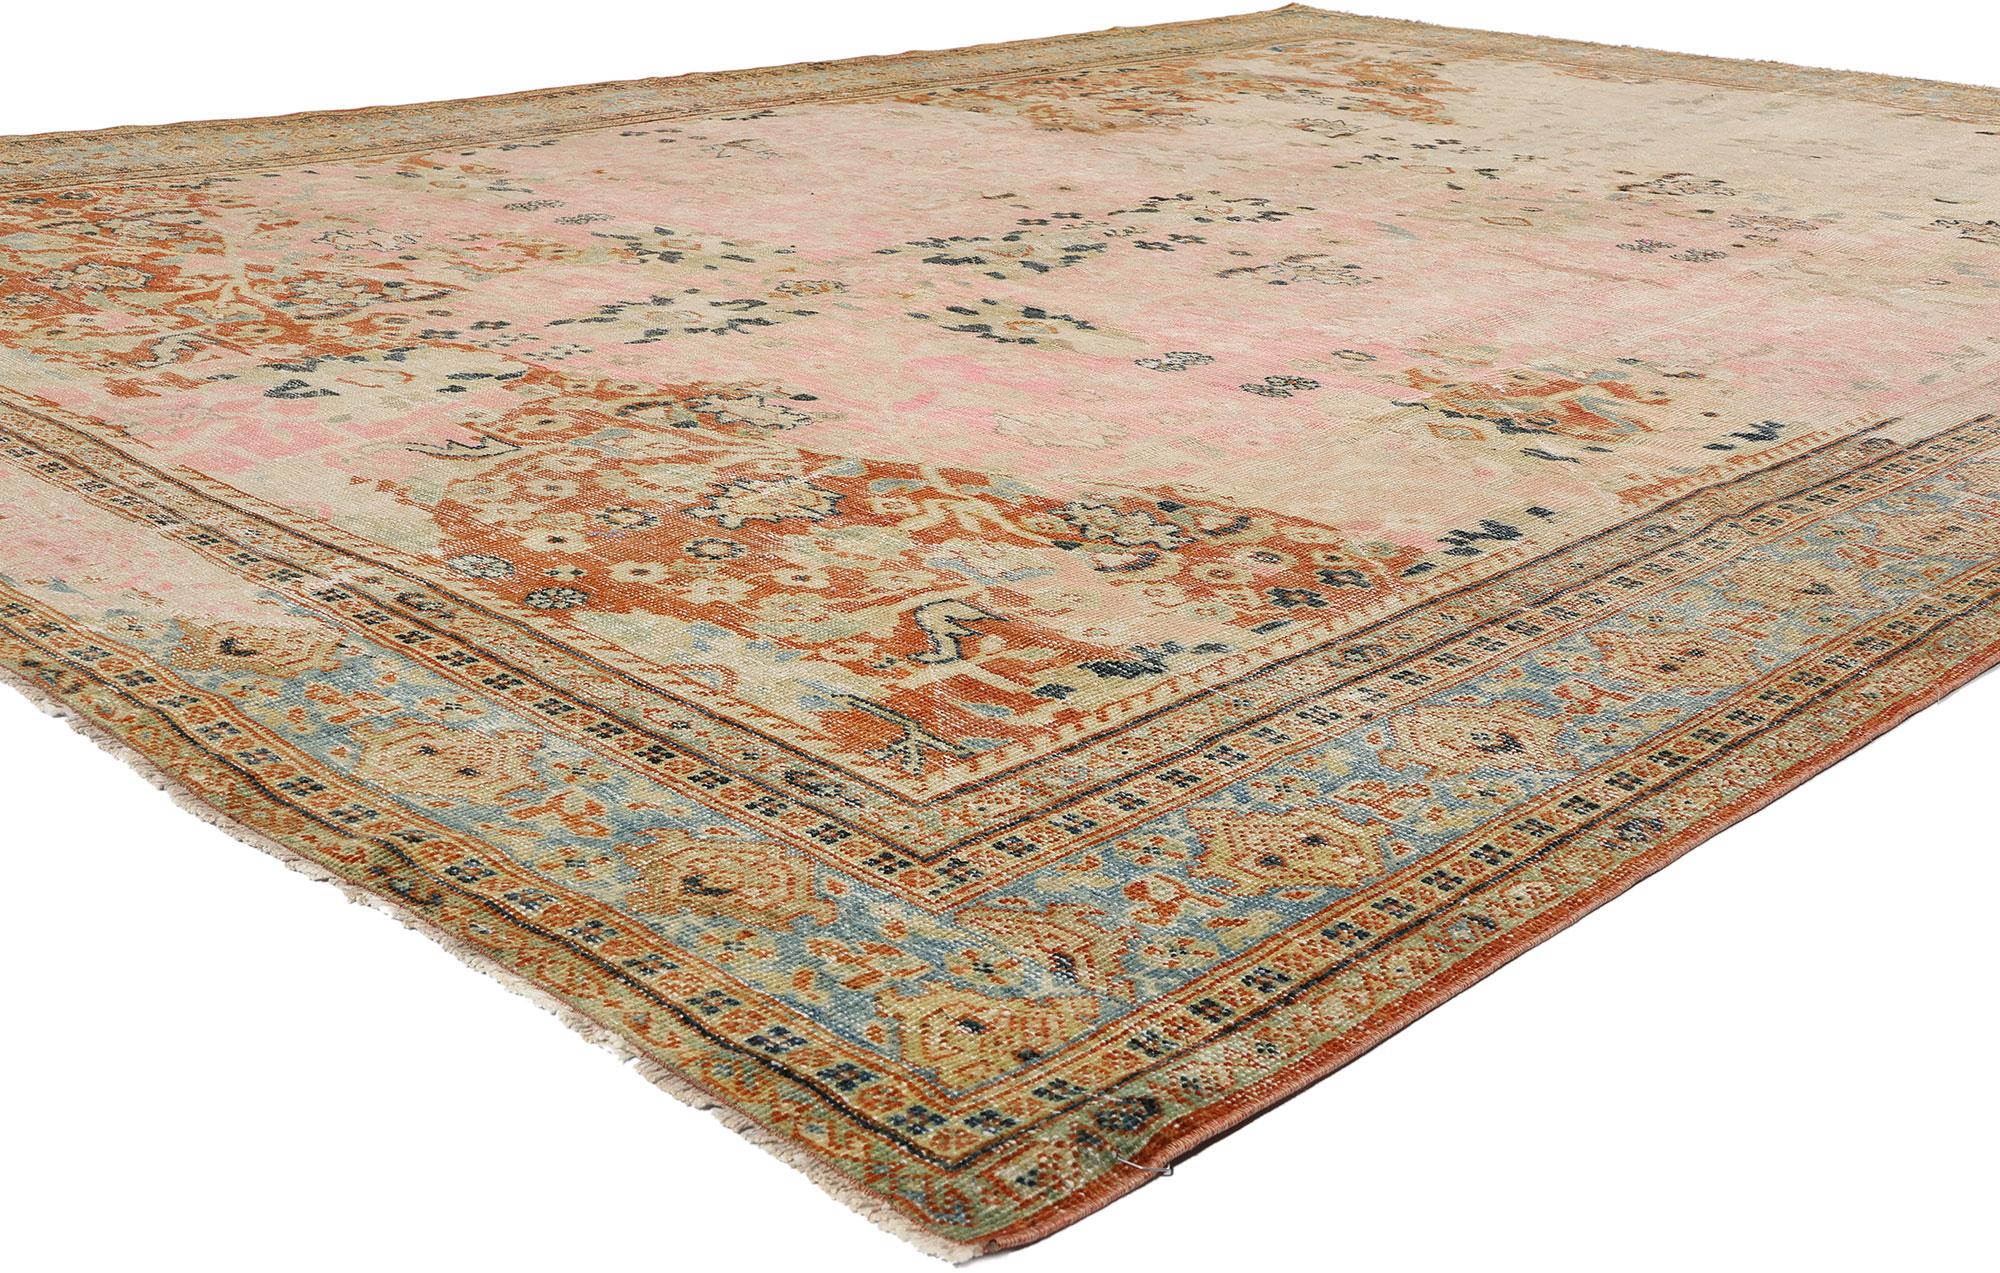 53910 Persischer Sultanabad-Teppich, 08'06 x 11'11, antikrosa. Antik gewaschene persische Sultanabad-Teppiche sind Teppiche, die mit einem speziellen Waschverfahren behandelt werden, um ihnen ein gealtertes und antiquiertes Aussehen zu verleihen.